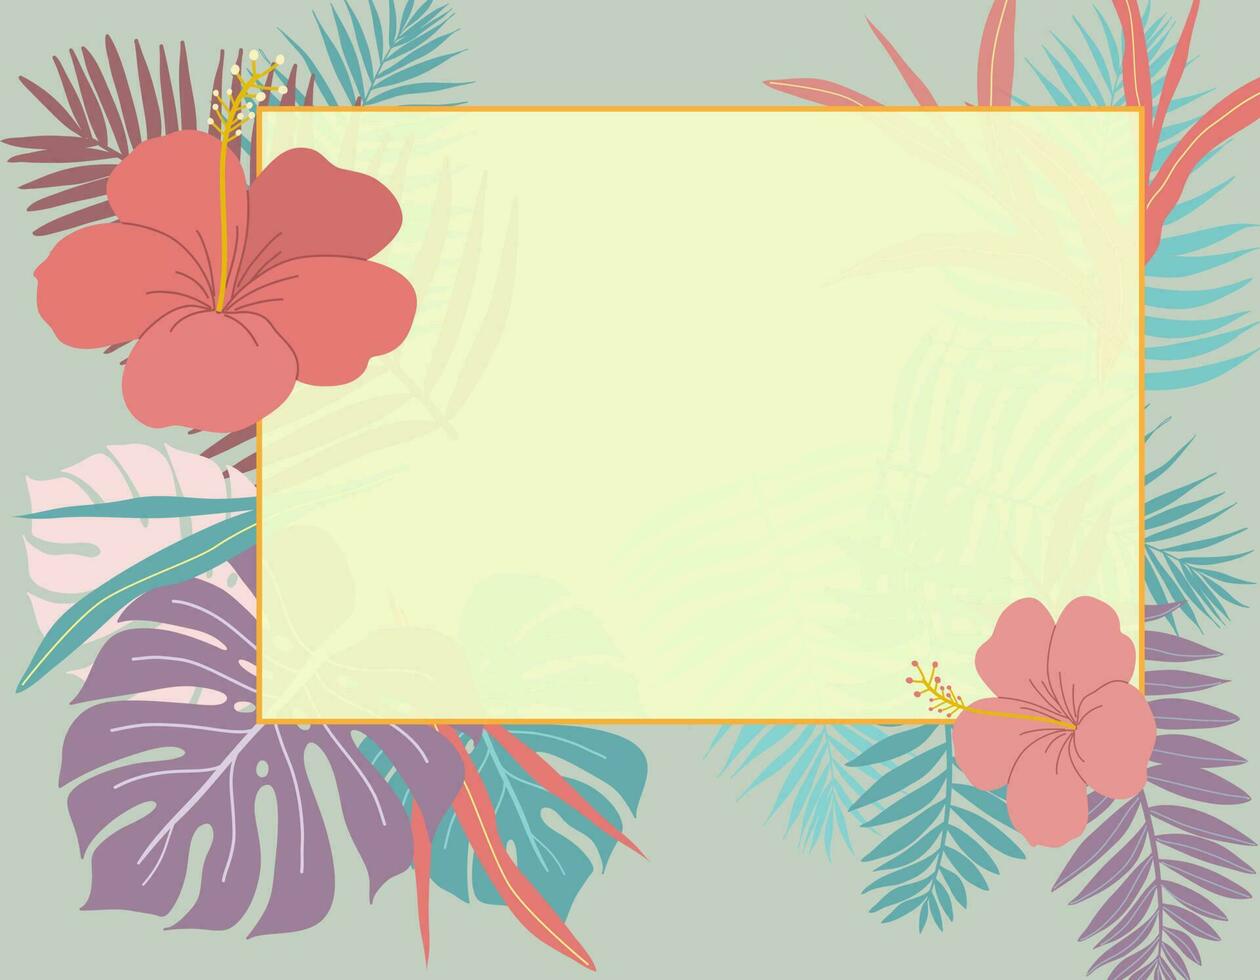 färgrik tropisk löv, lövverk växt, hibiskus blomma med horisontell ram baner, rum för text. vektor design illustration.